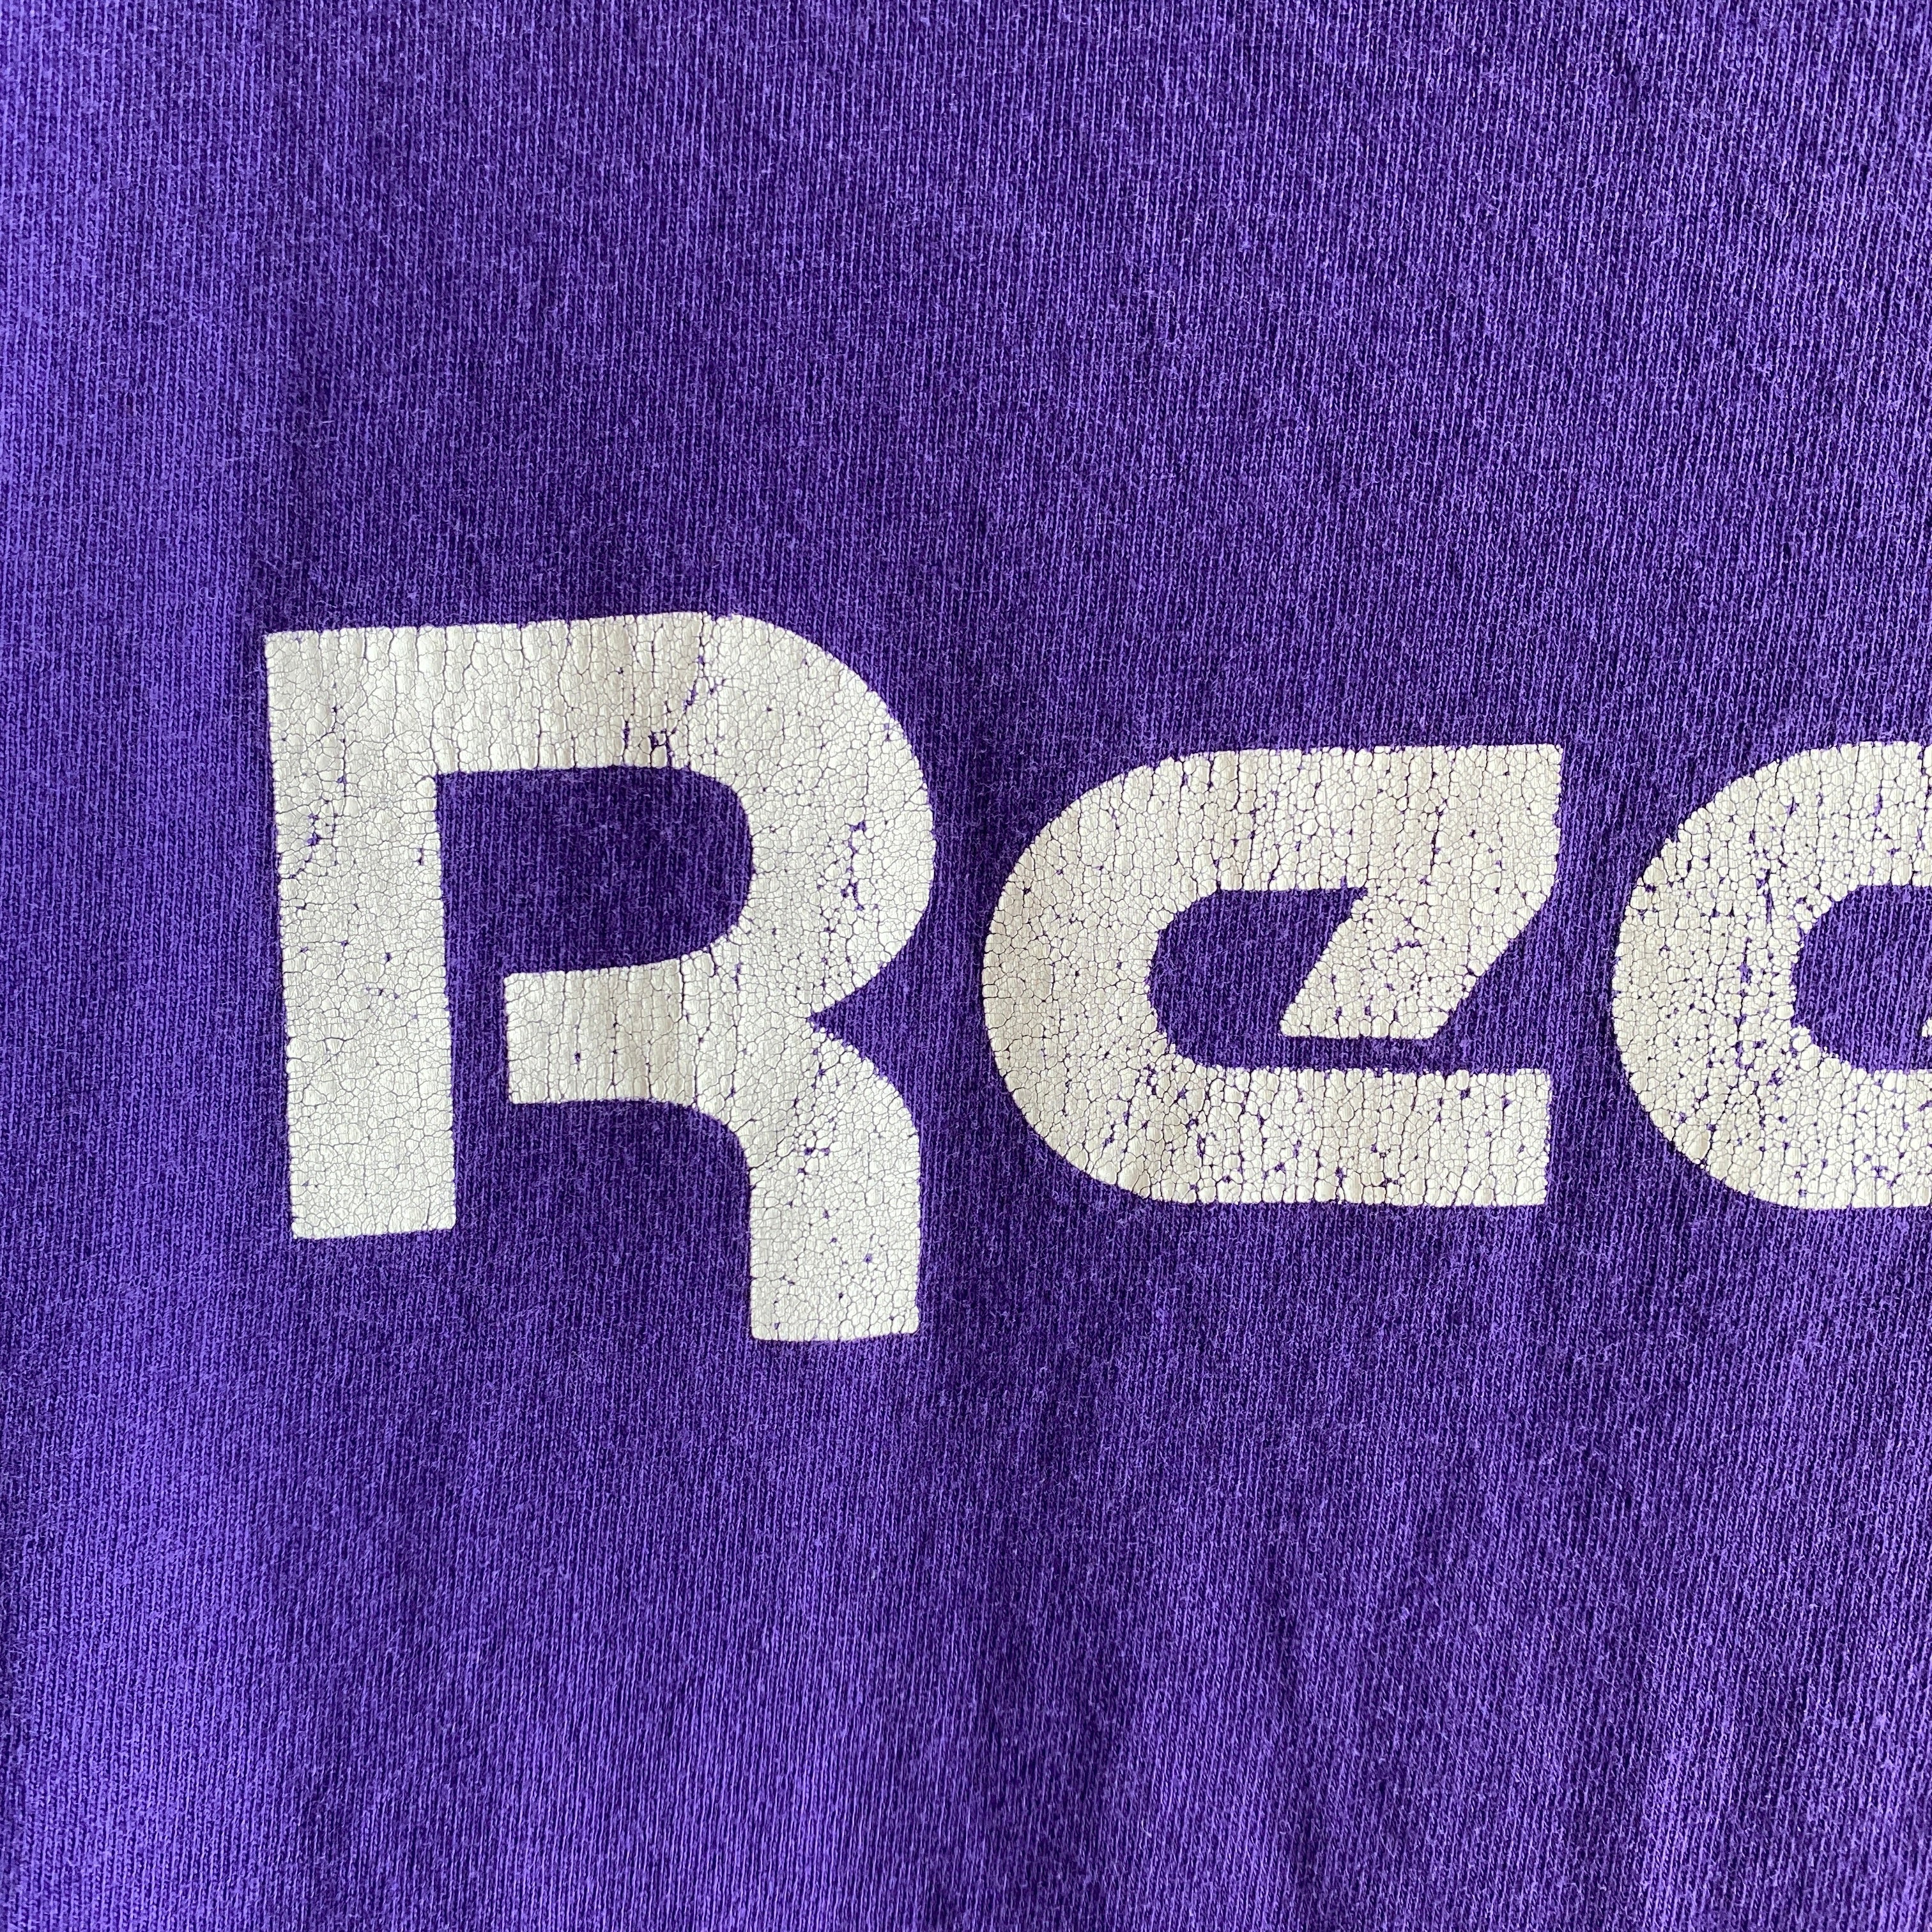 T-shirt en coton Reebok des années 1980 fabriqué aux États-Unis